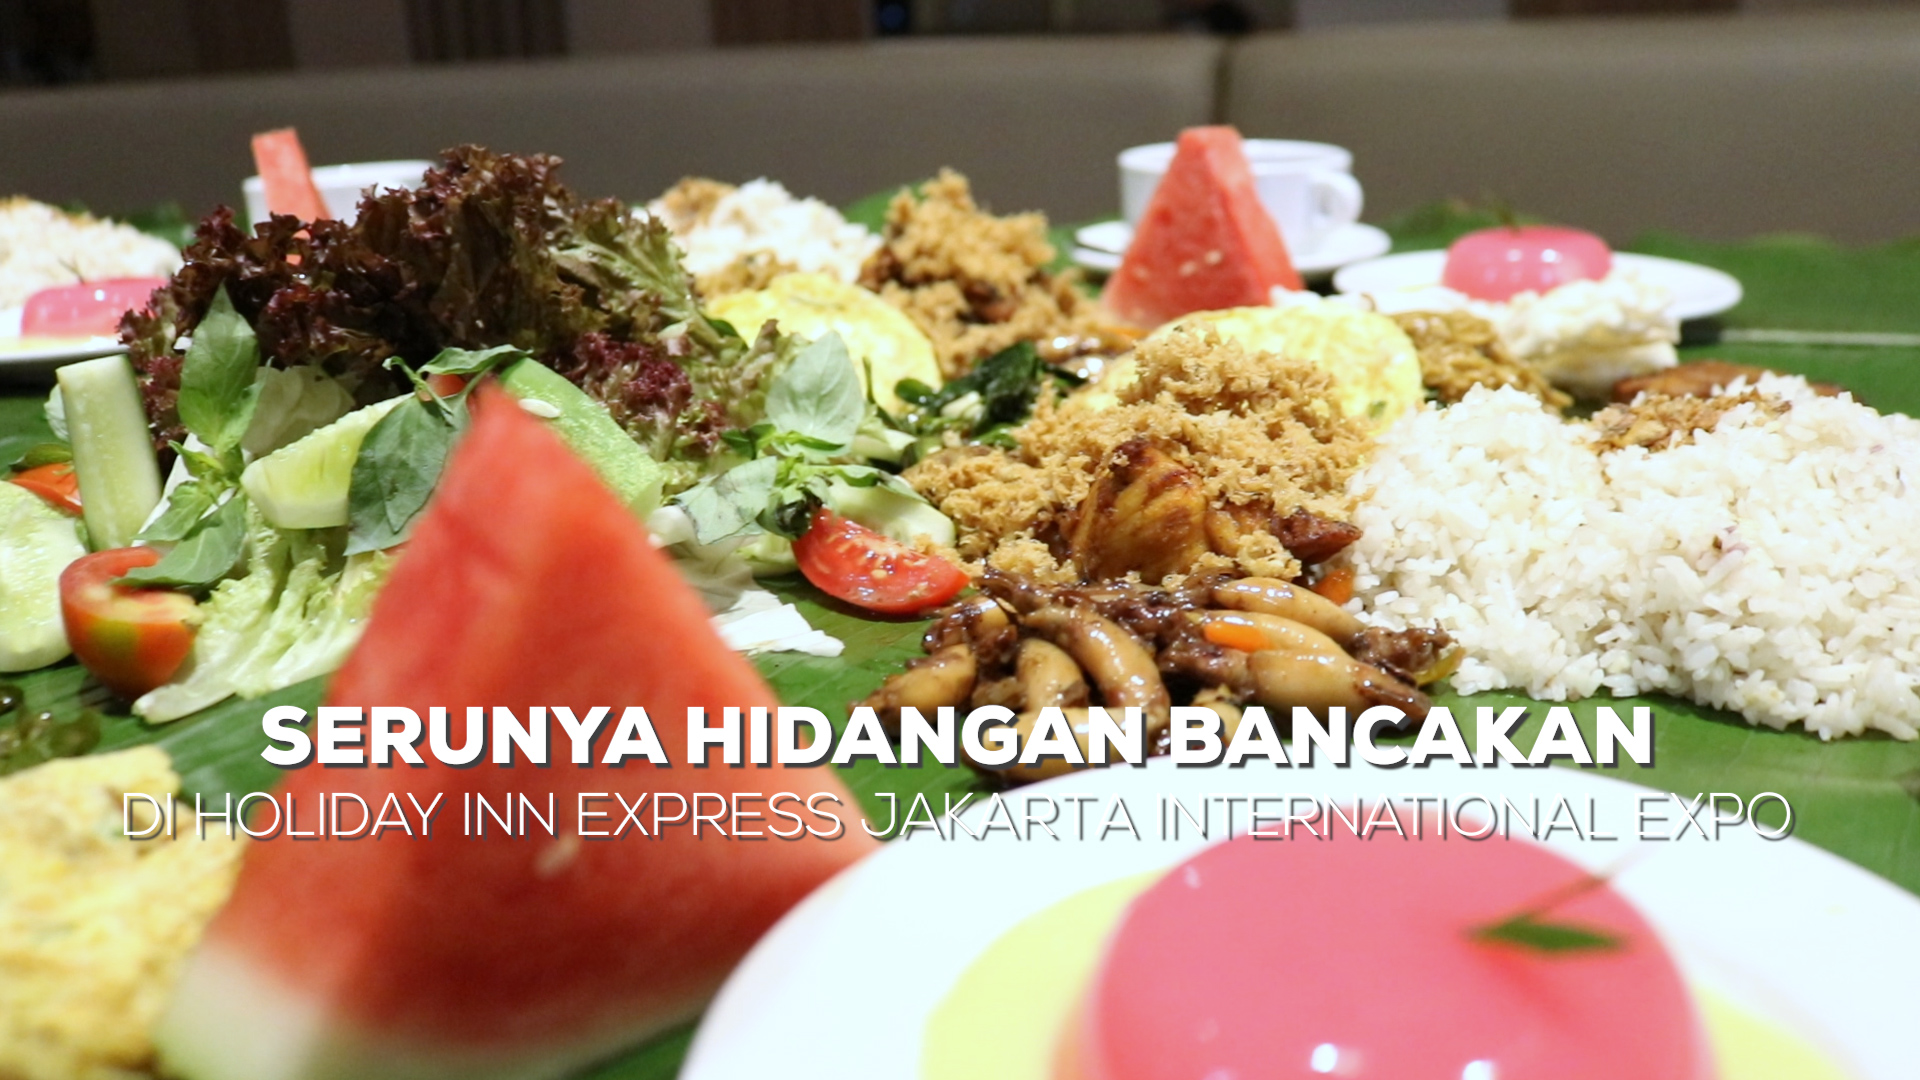 Serunya hidangan Bancakan di Holiday Inn Express Jakarta International Expo. (Alidrian Fahwi/ipol.id)